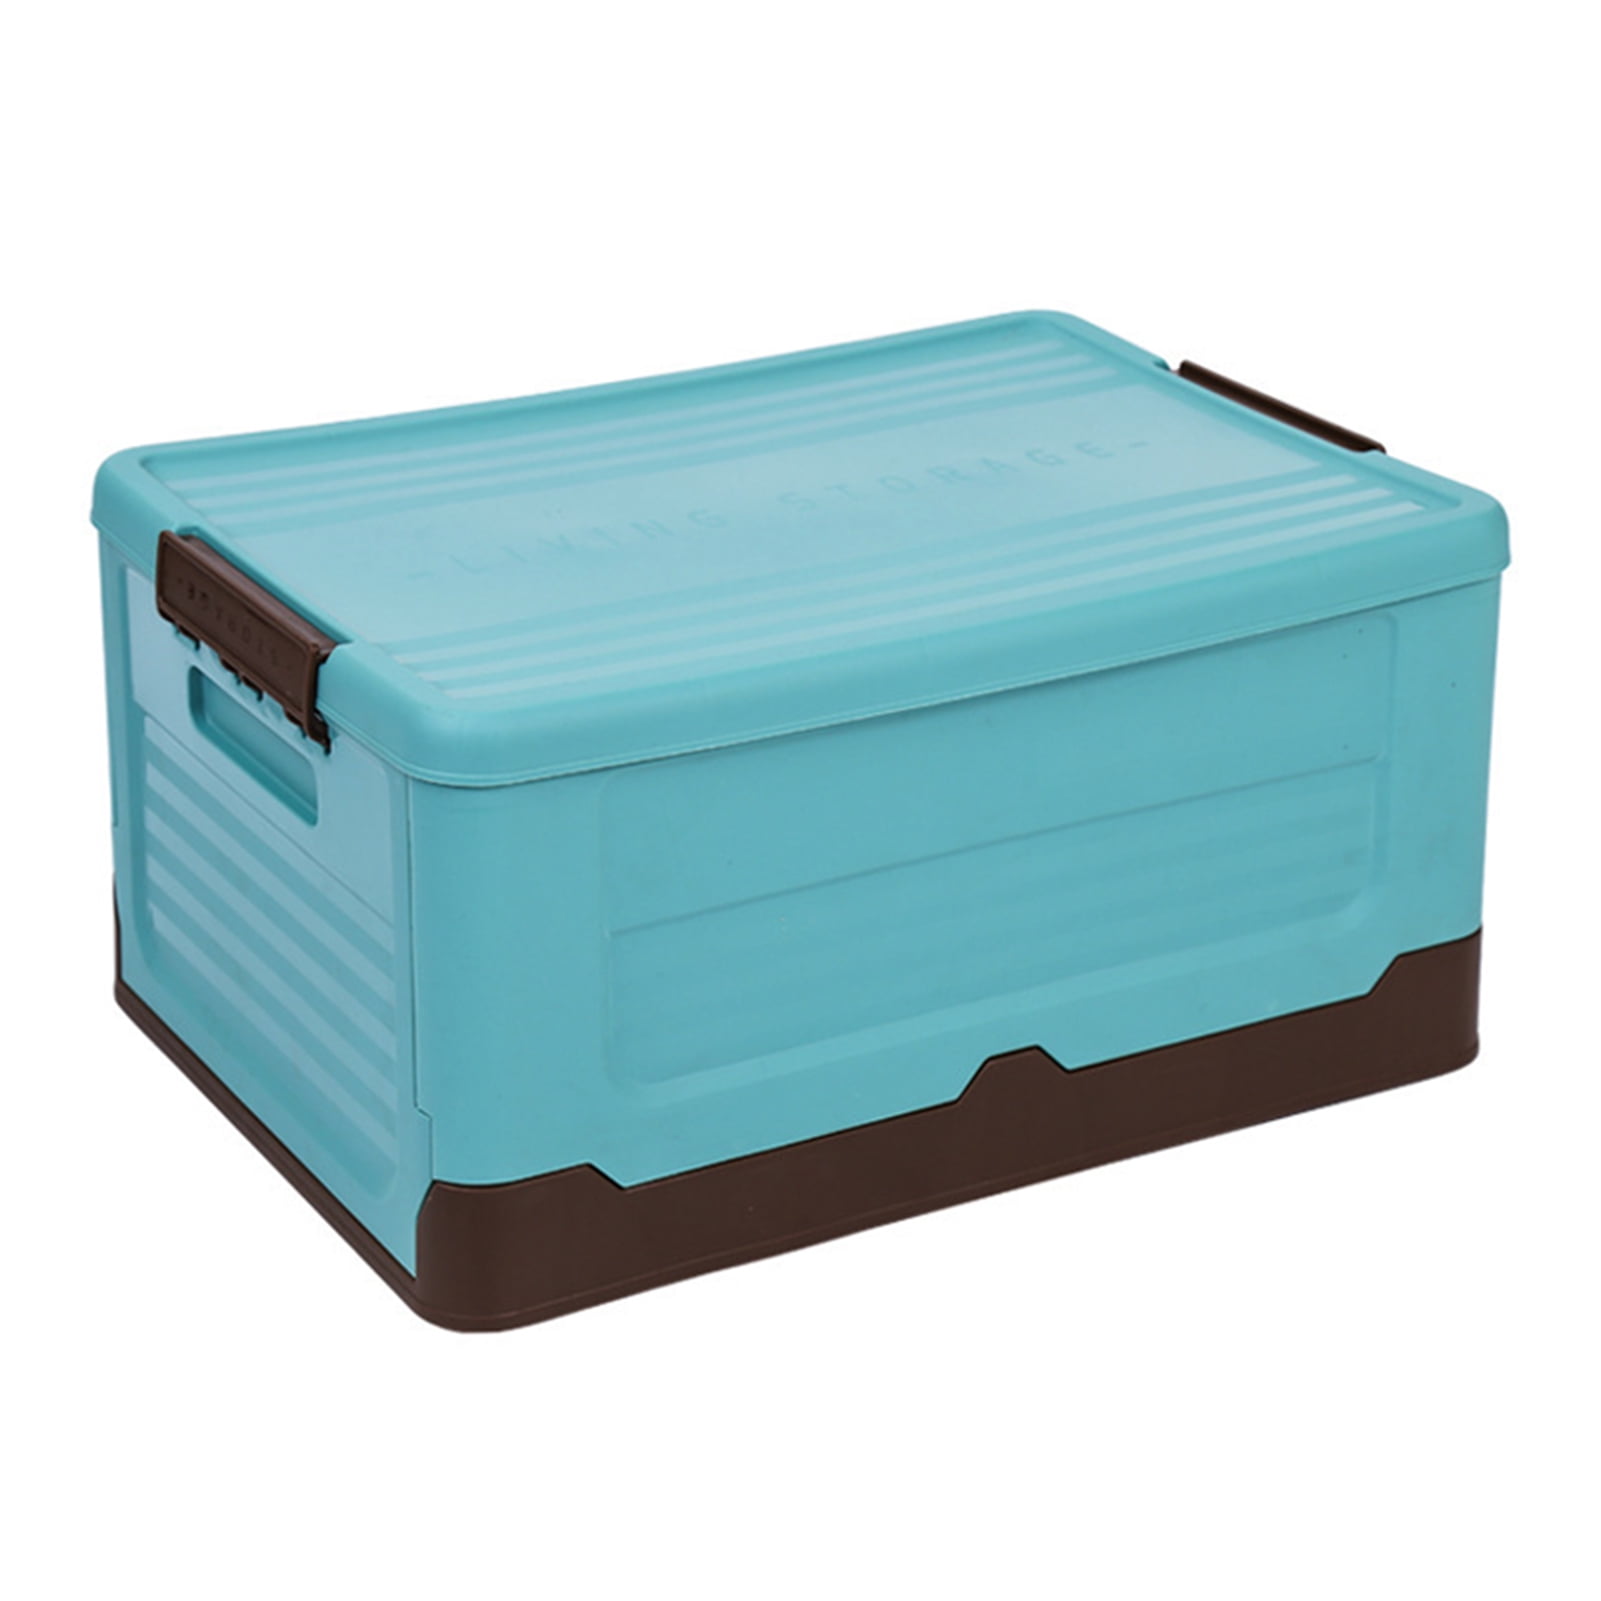 Tray Storage Box Organizer Holder